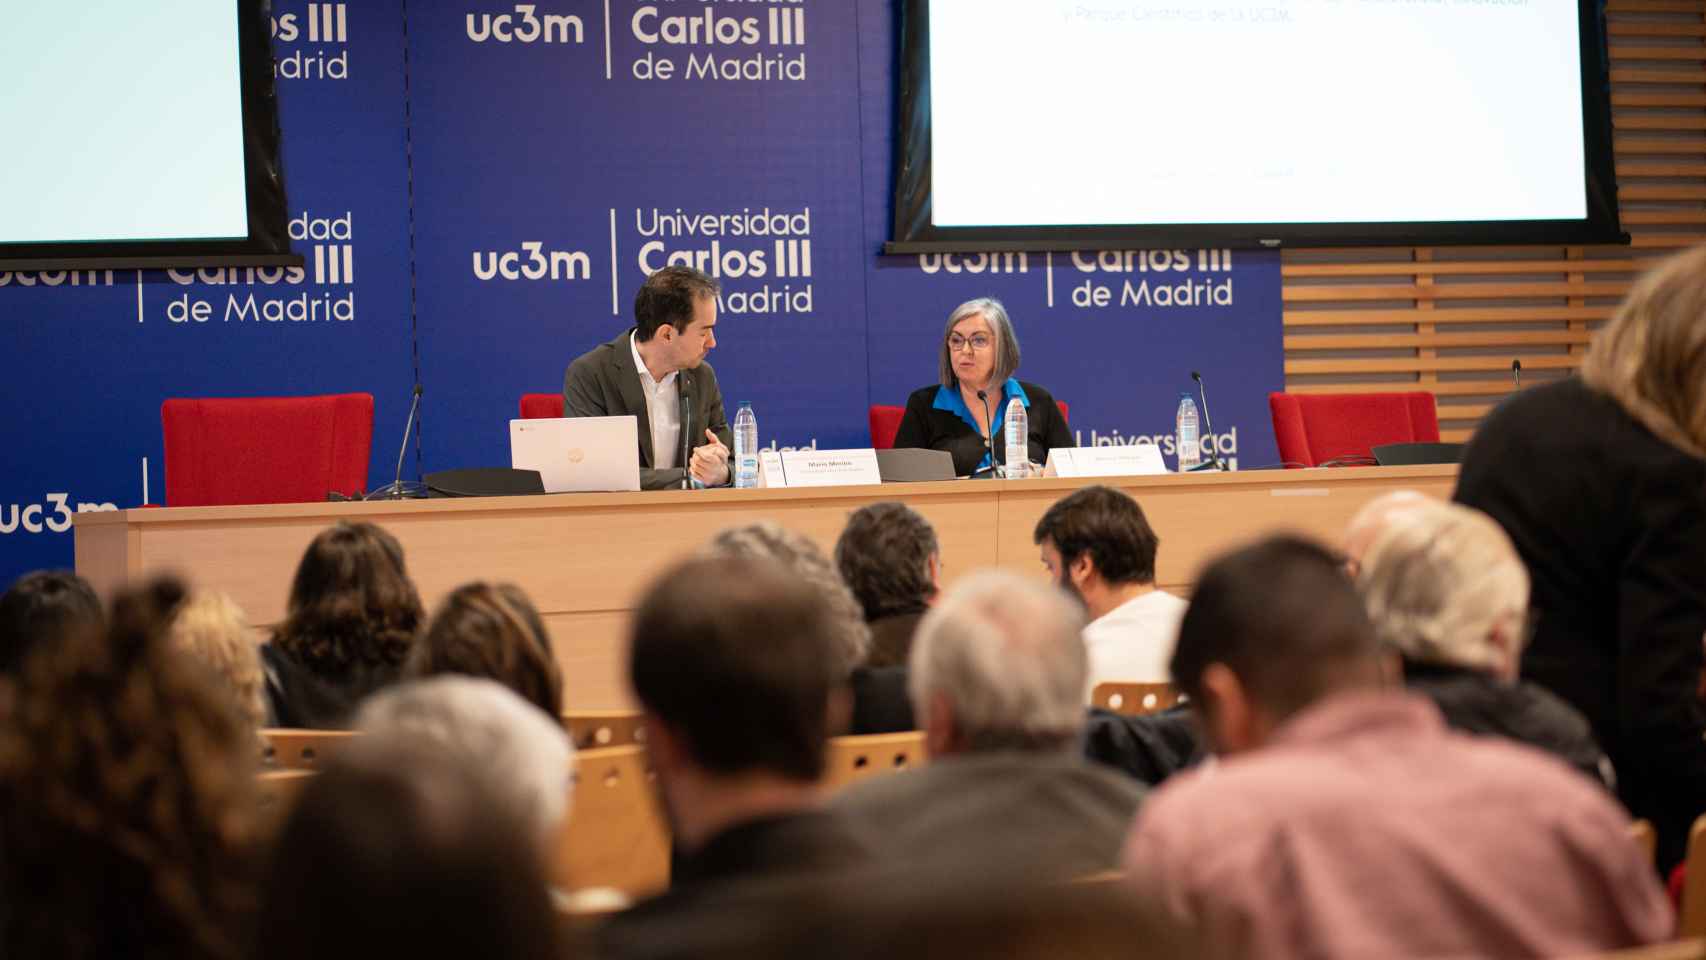 Marina Villegas, Directora General de Investigación e Innovación Tecnológica de la Comunidad de Madri, y Mario Merino, Vicerrector Adjunto de Transferencia, Innovación y Parque Científico de la UC3M.